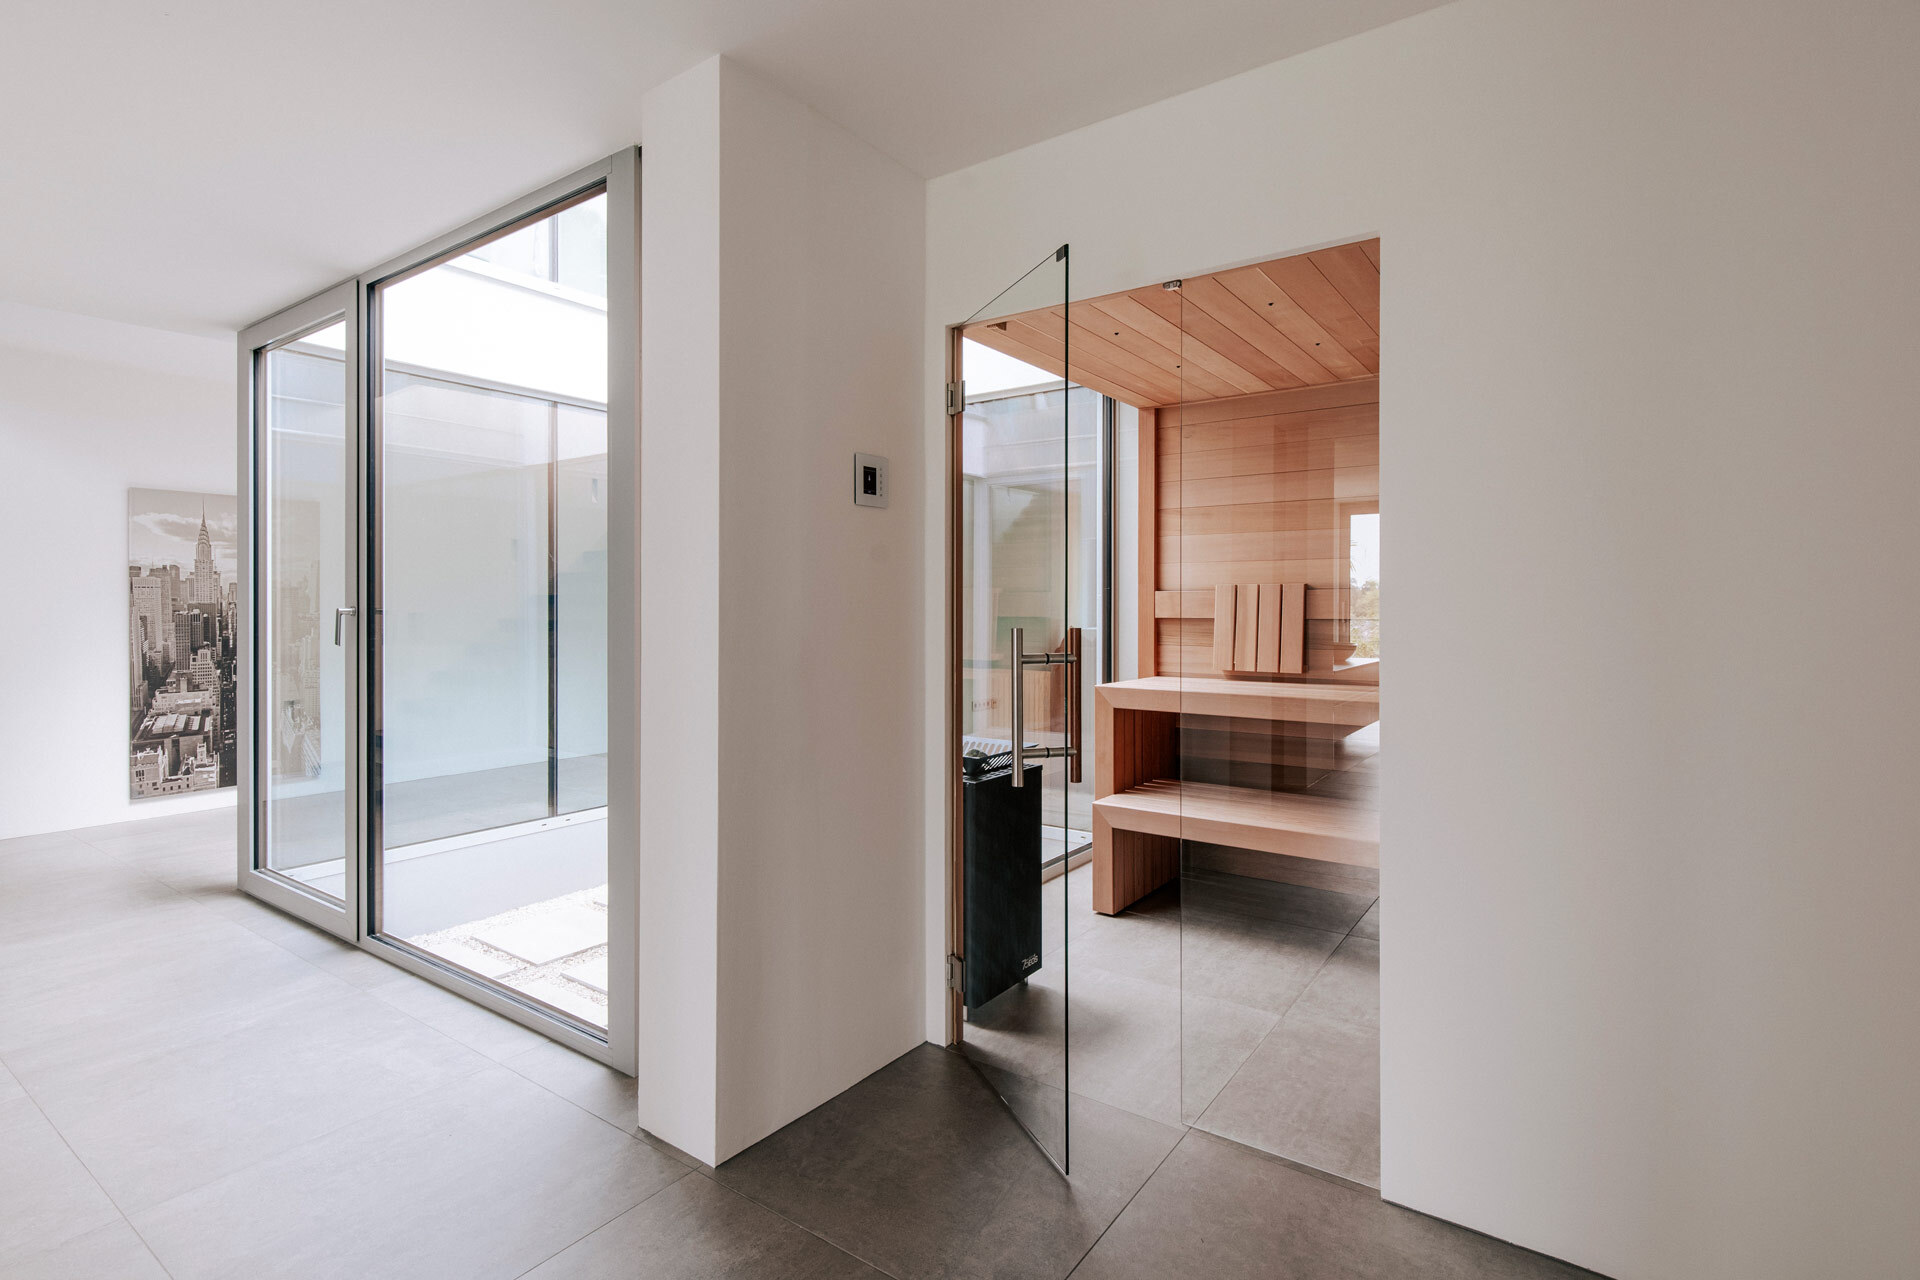 Minimalistische, moderne Sauna aus ruhig anmutendem Zedernholz, mit Glasfront und Anbindung an ein rundum verglastes Atrium.